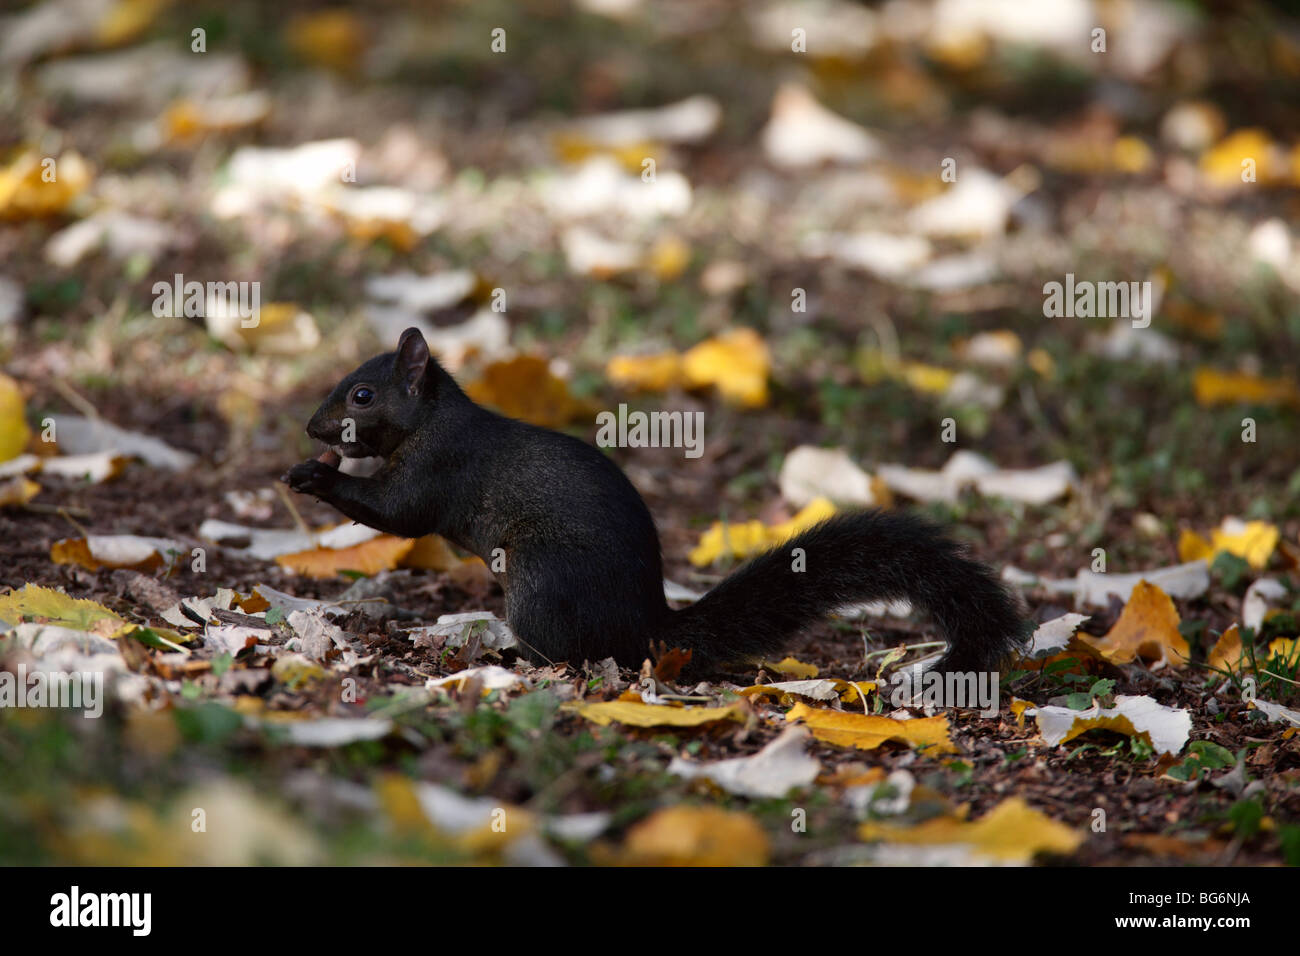 Scirius carolinensis écureuil gris (noir) alimentation mutant acorn dans les feuilles d'automne Banque D'Images